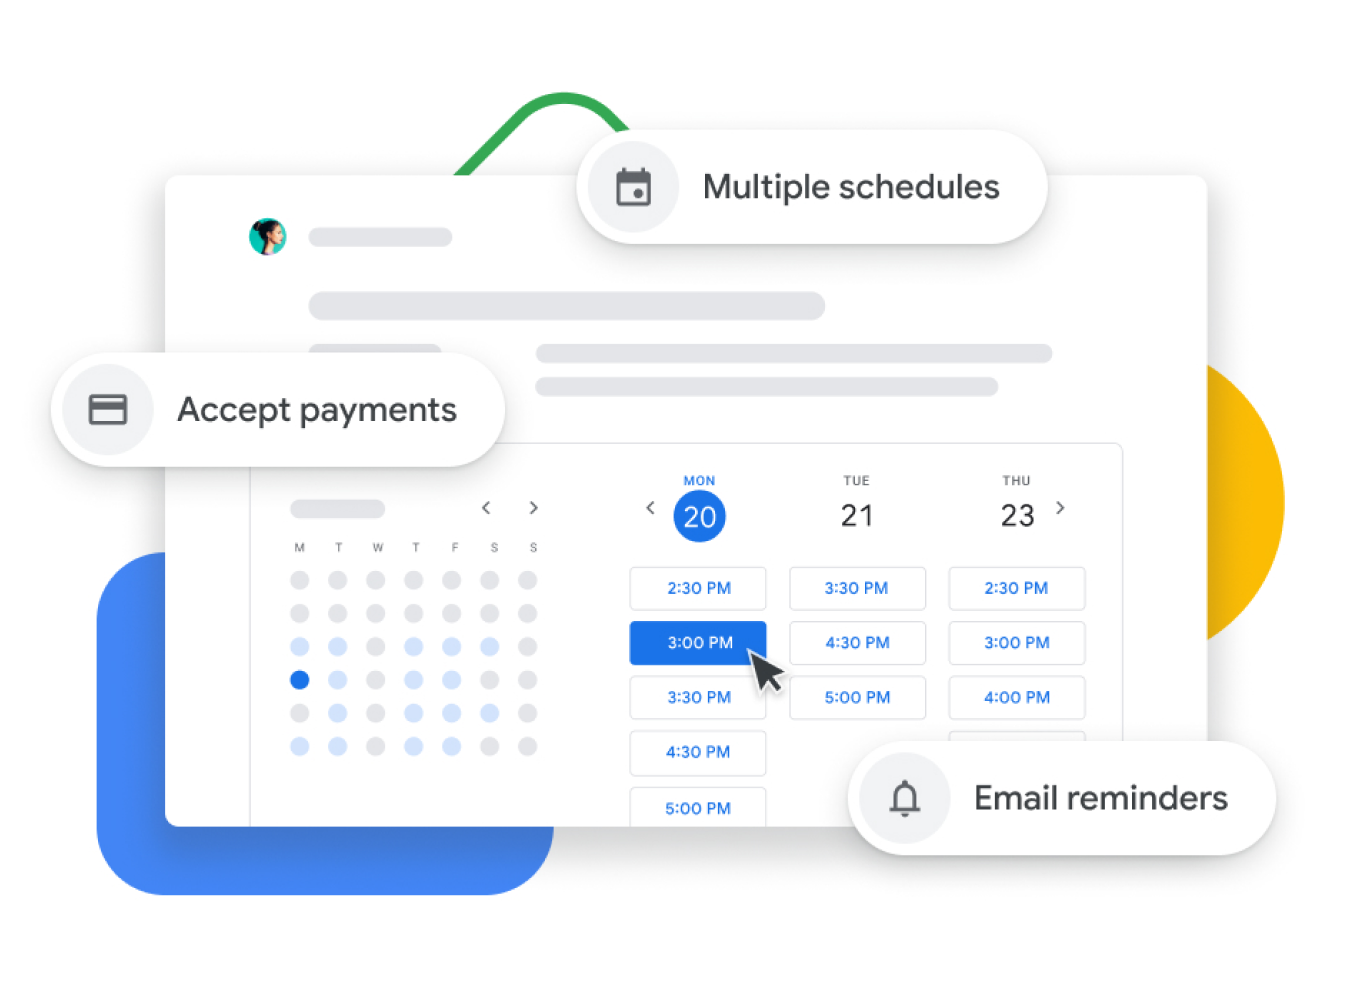 Kuva Google Kalenterin varauskalenterista, jonka avulla käyttäjät voivat hyväksyä maksuja, vahvistaa tapaamisia asiakkaiden kanssa ja lähettää sähköpostimuistutuksia.